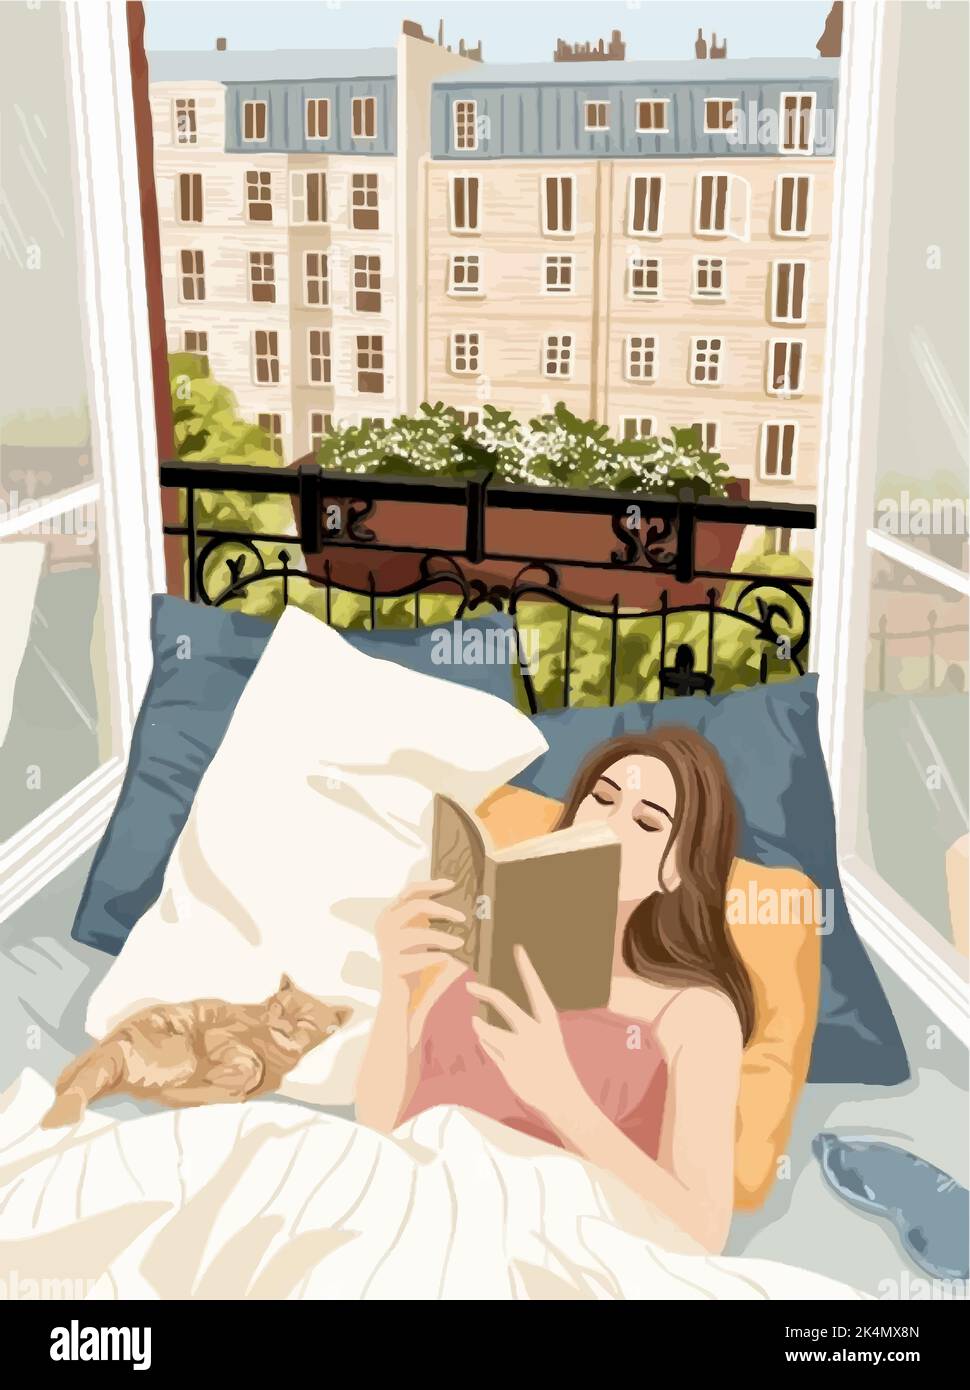 Ein Mädchen im Bett mit einem Buch und einer Ingwerkatze vor dem Hintergrund eines offenen Fensters und Blick auf die Stadt Stock Vektor